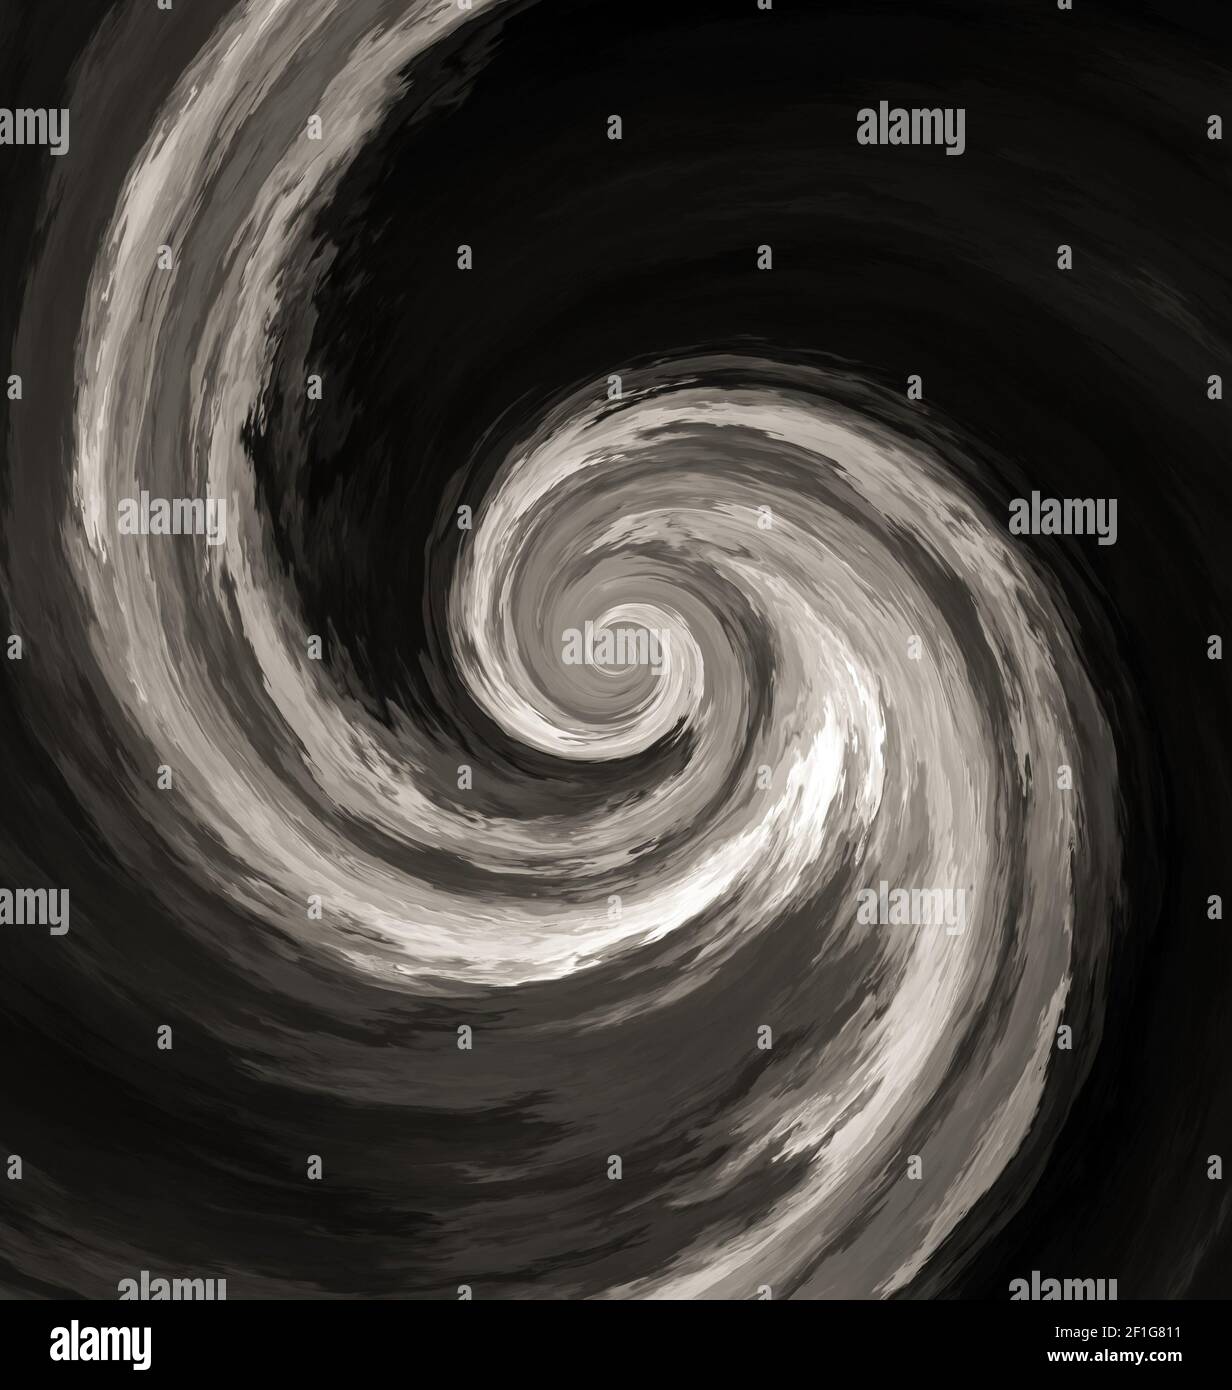 Eine abstrakt wirbelnde Spiraldarstellung in schwarz-weißen Farben Stockfoto